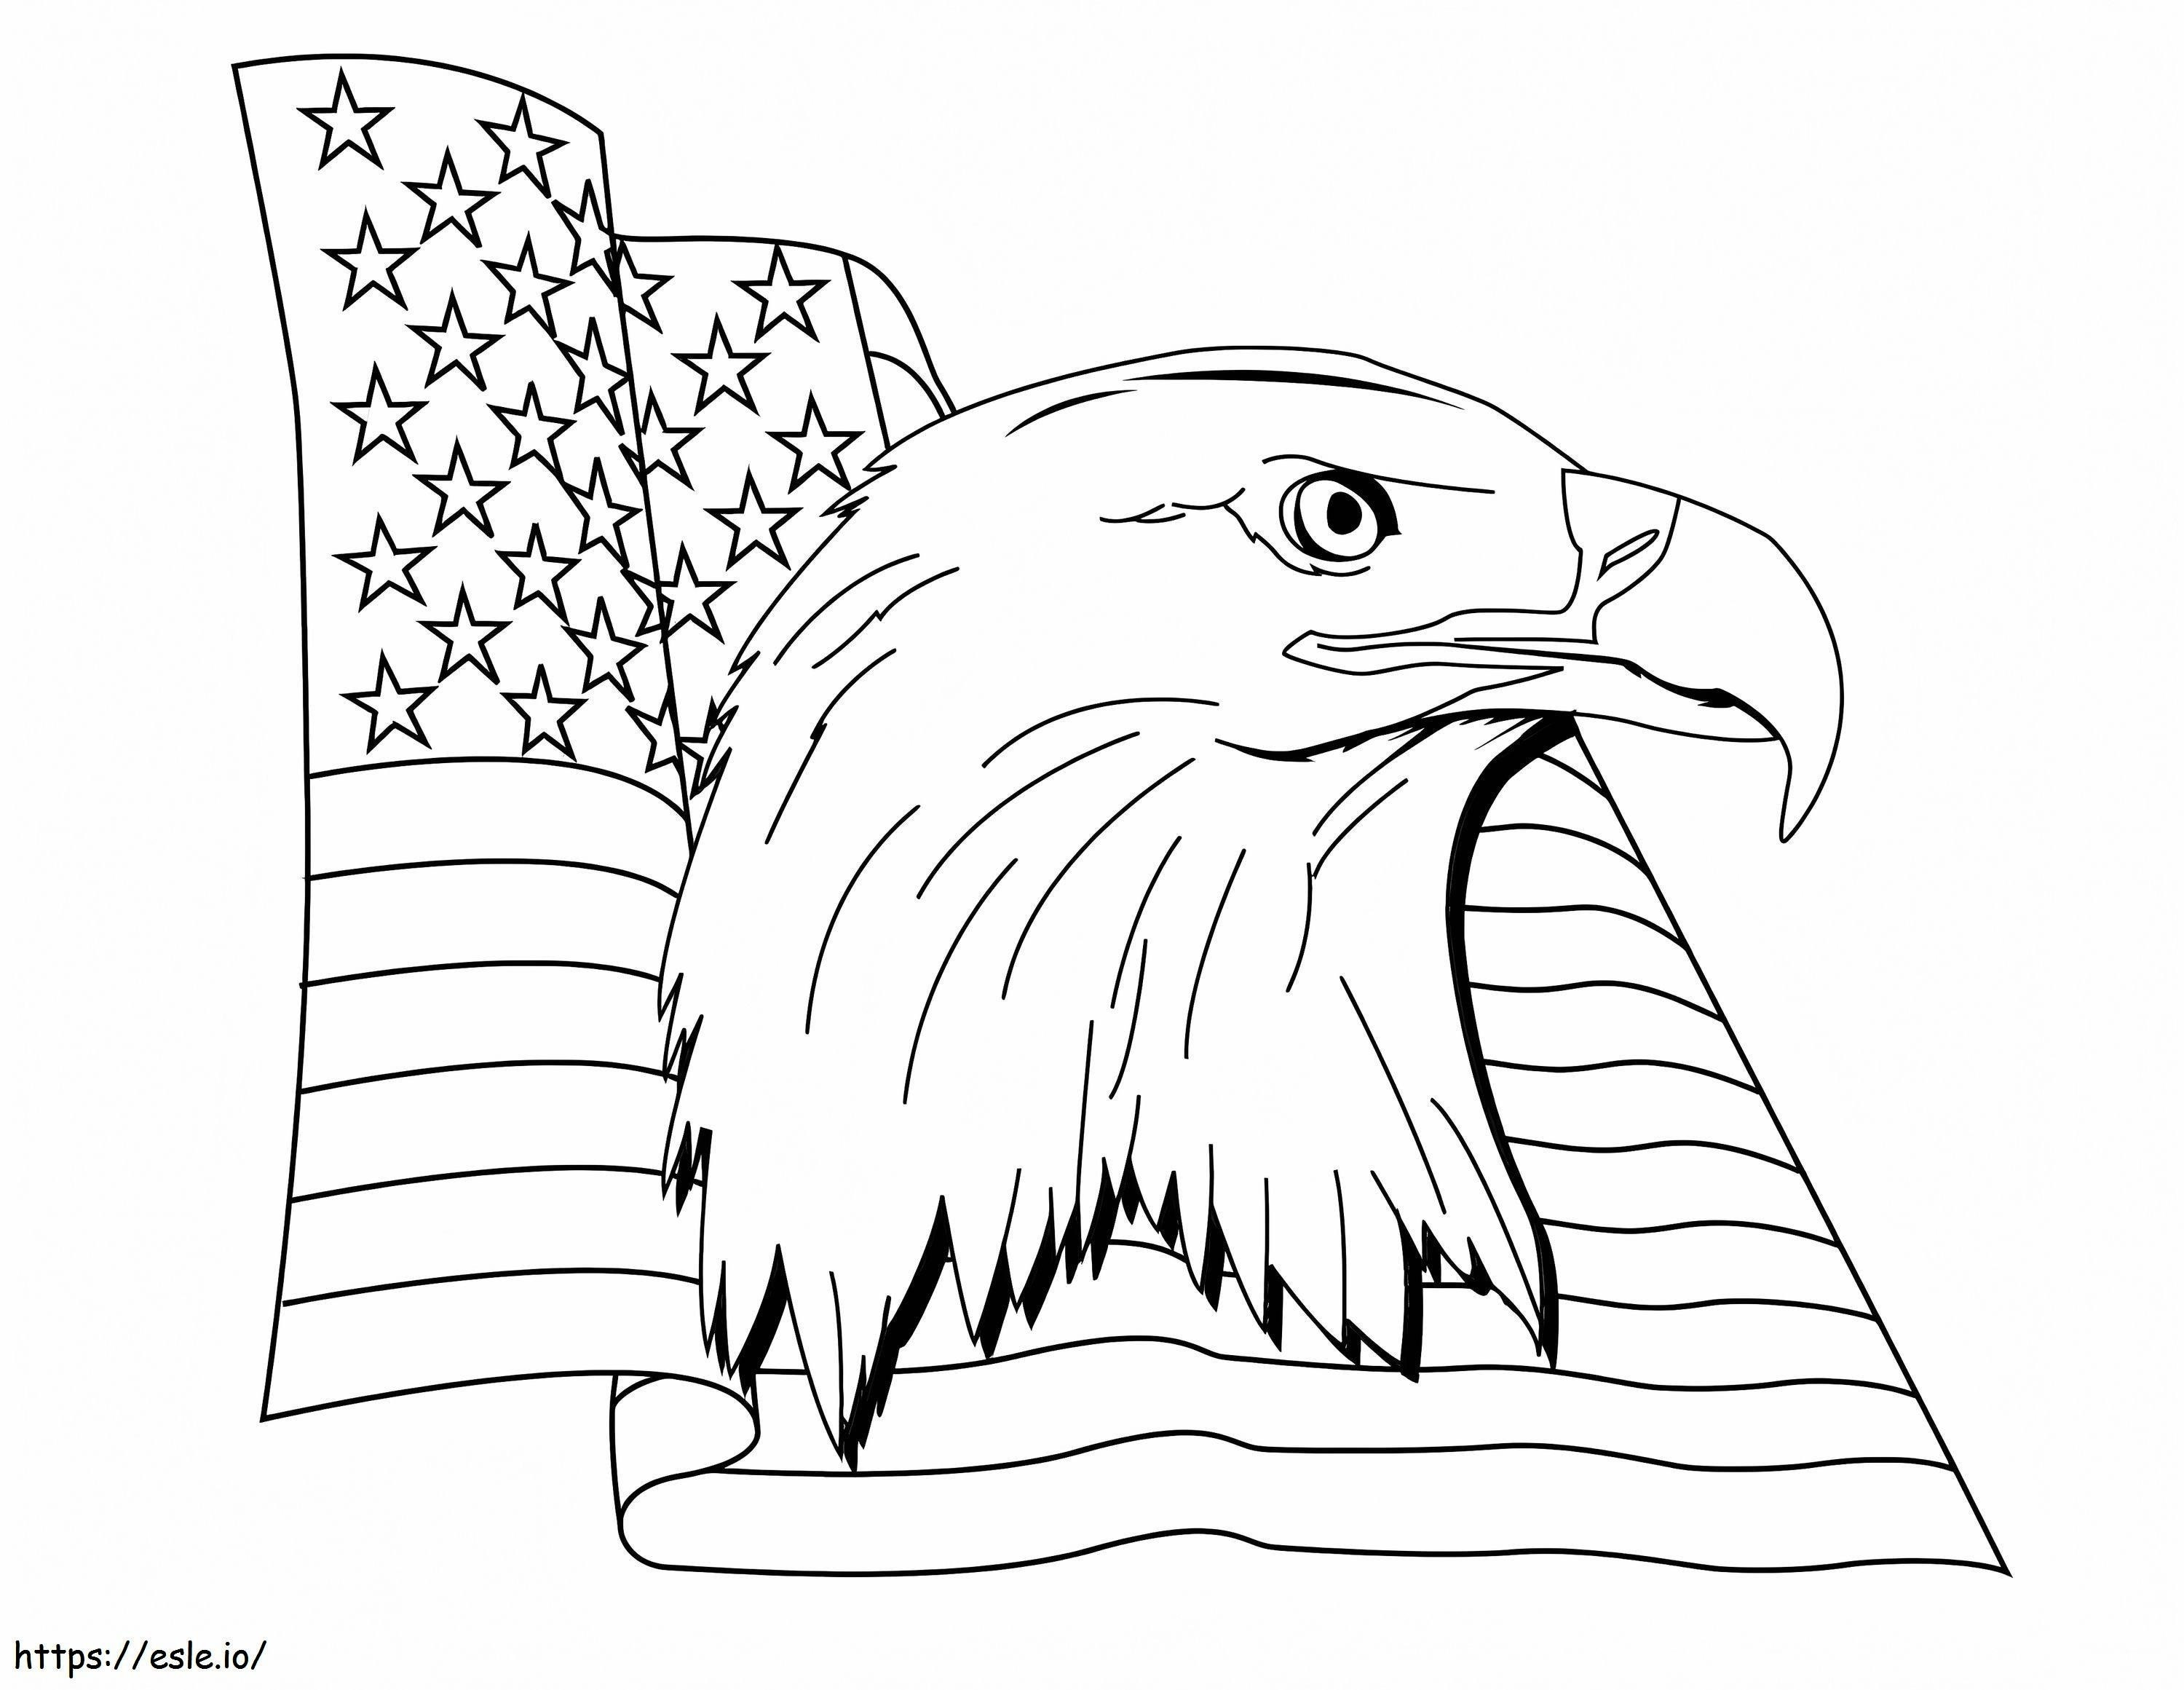 Adler Patriotisch 1 ausmalbilder